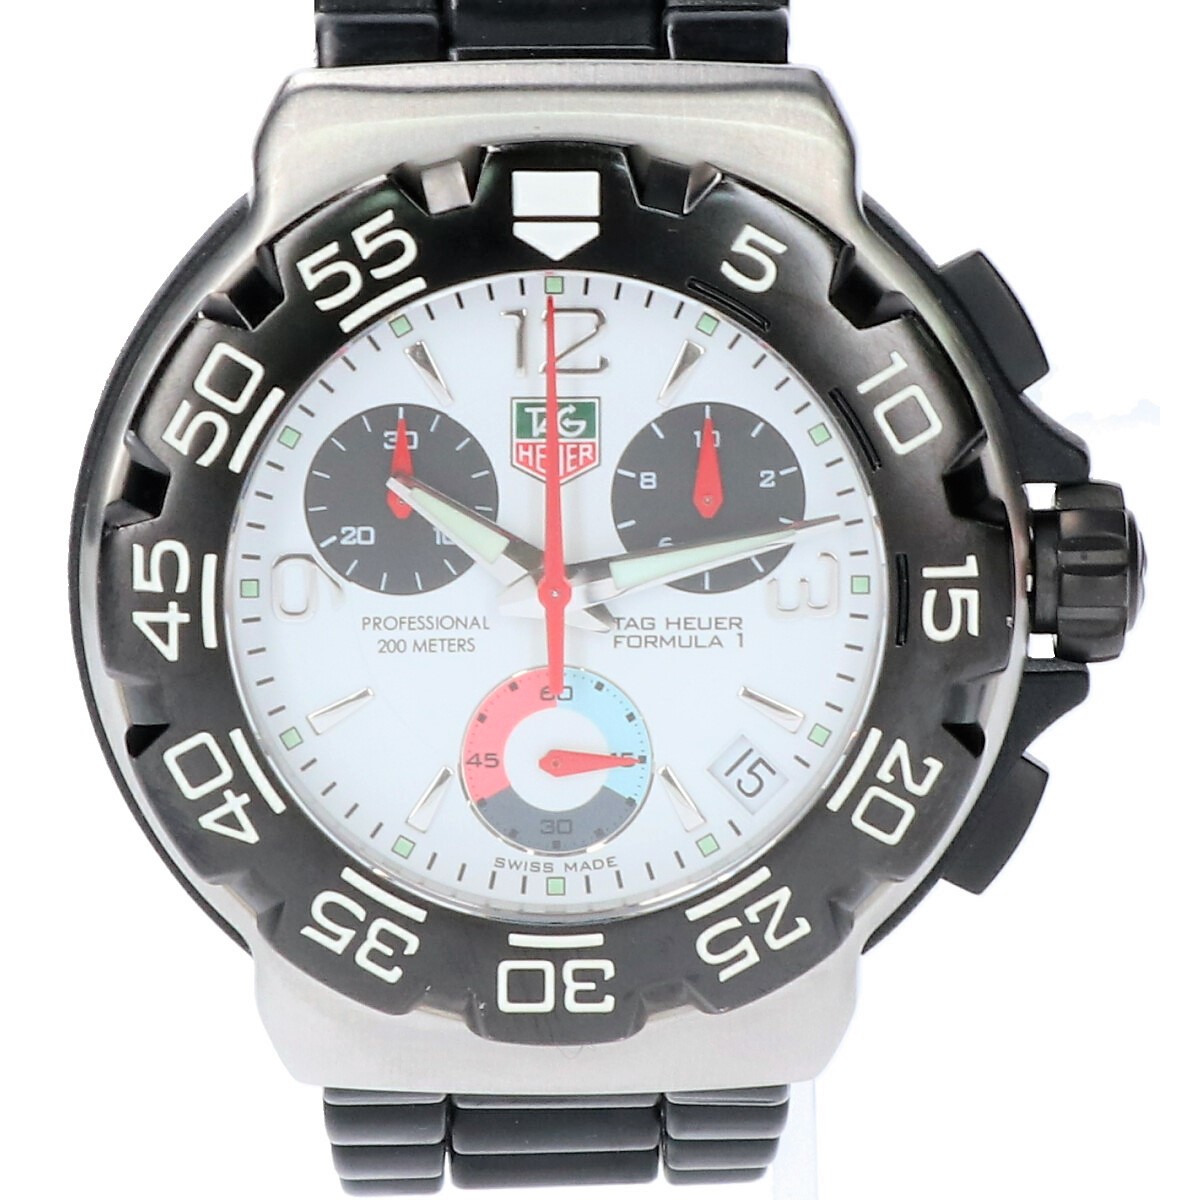 タグ・ホイヤーのCAC 1111-0 フォーミュラ1 白文字盤 クロノグラフ クオーツ 腕時計の買取実績です。